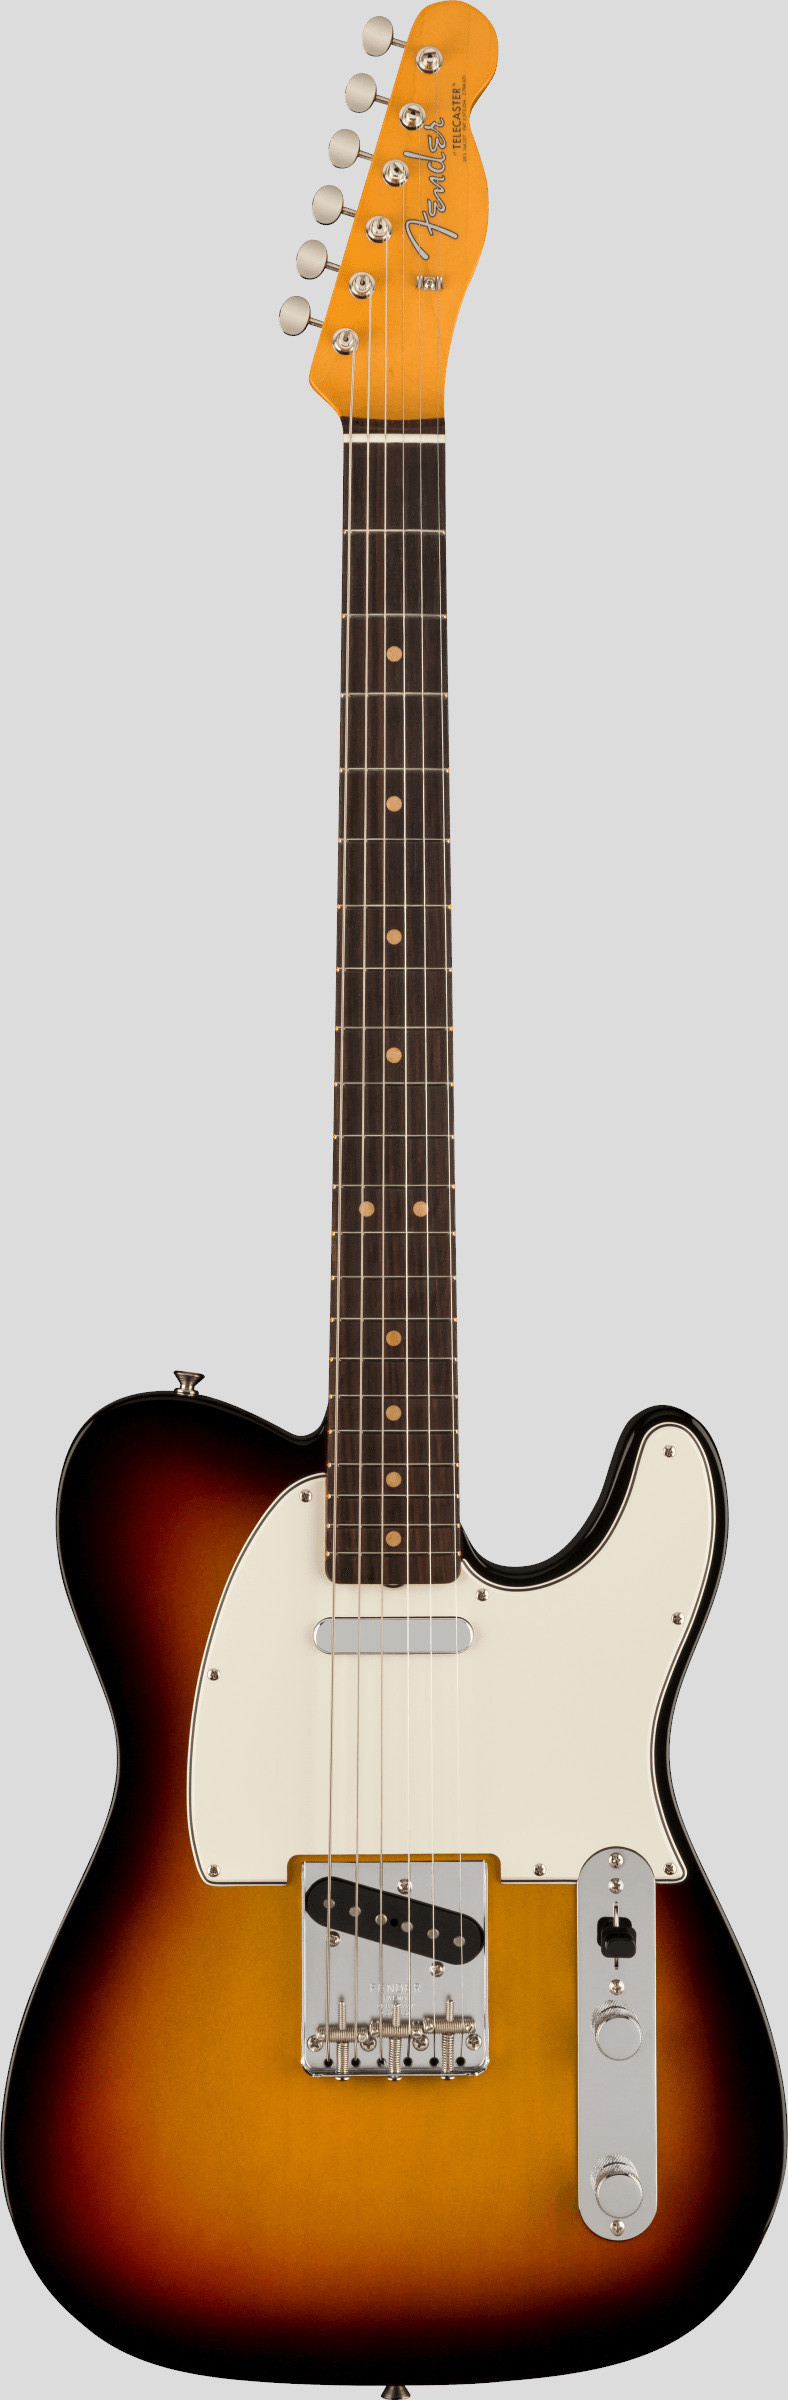 Fender American Vintage II 1963 Telecaster 3-Color Sunburst 1